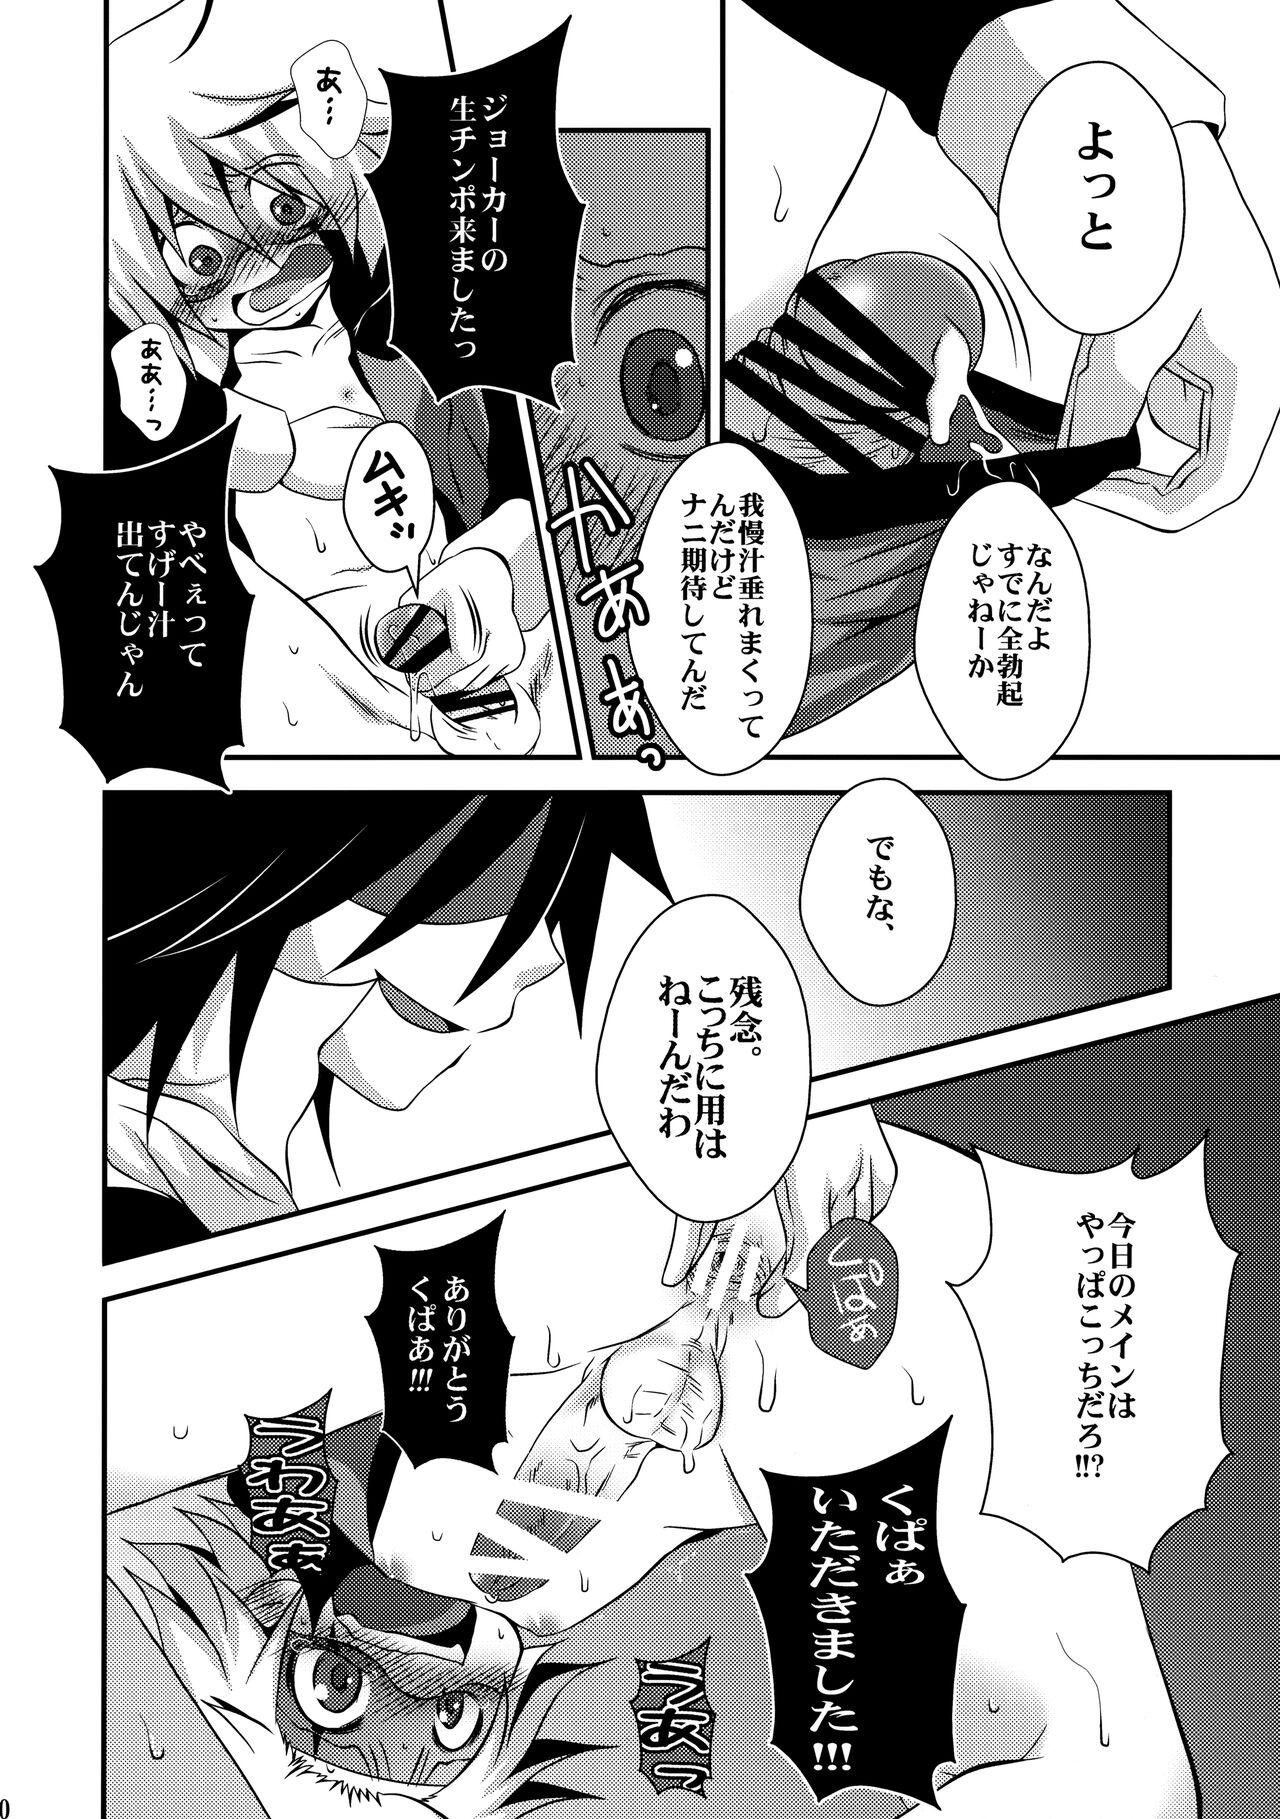 Licking Kaitou Namaiki ☆ Ecstasy - Kaitou joker Spanish - Page 9